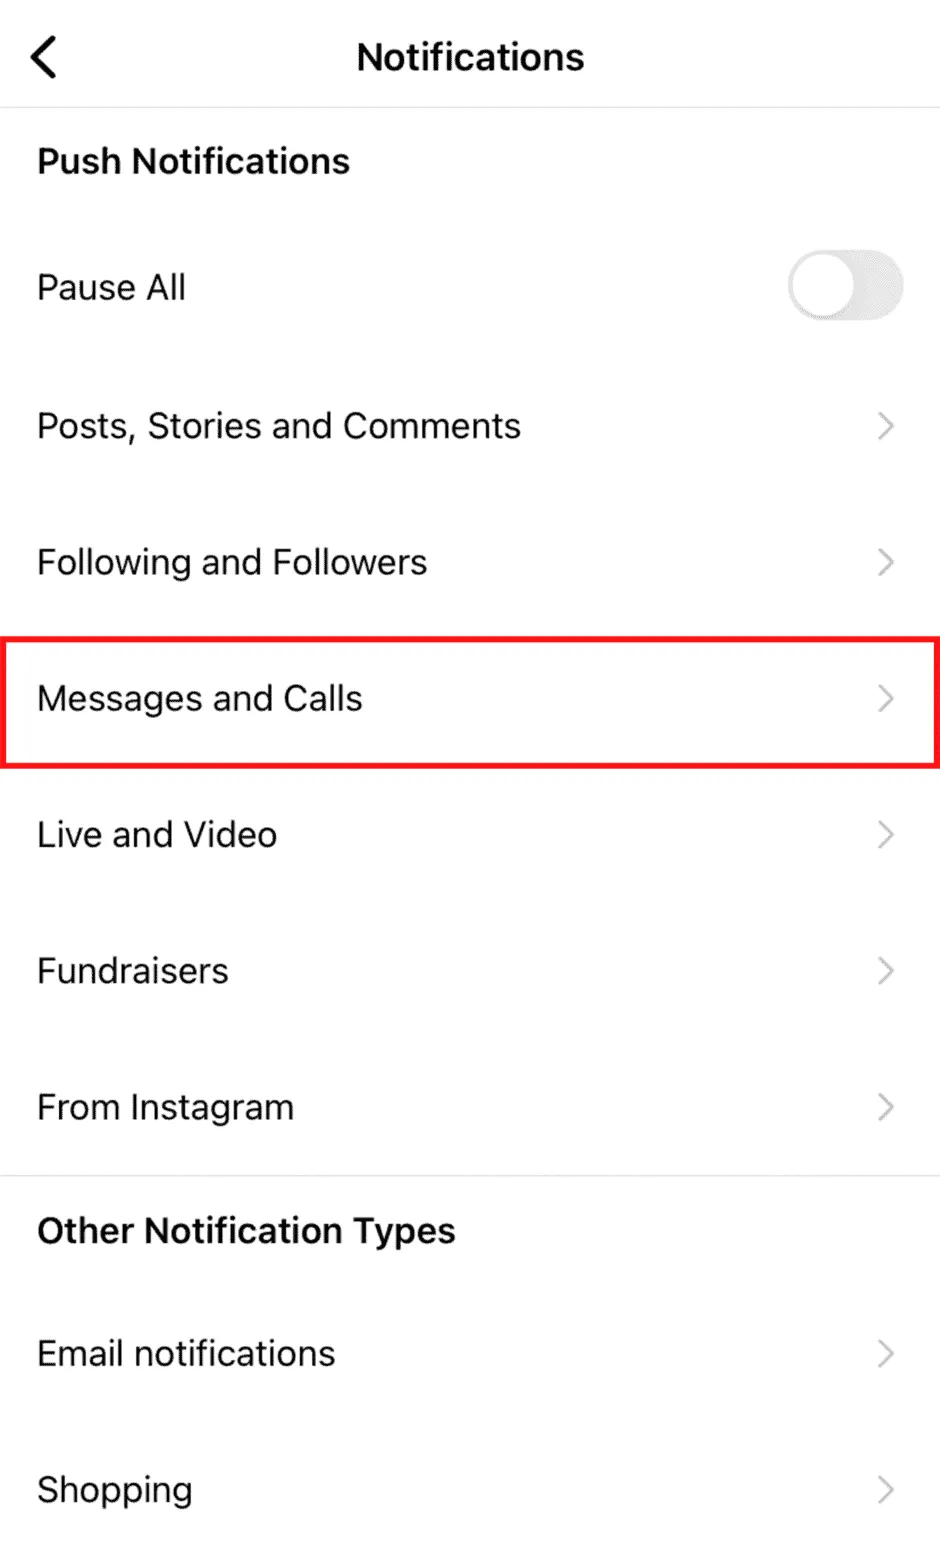 Μεταβείτε στην ενότητα μηνύματα και κλήσεις στο Instagram